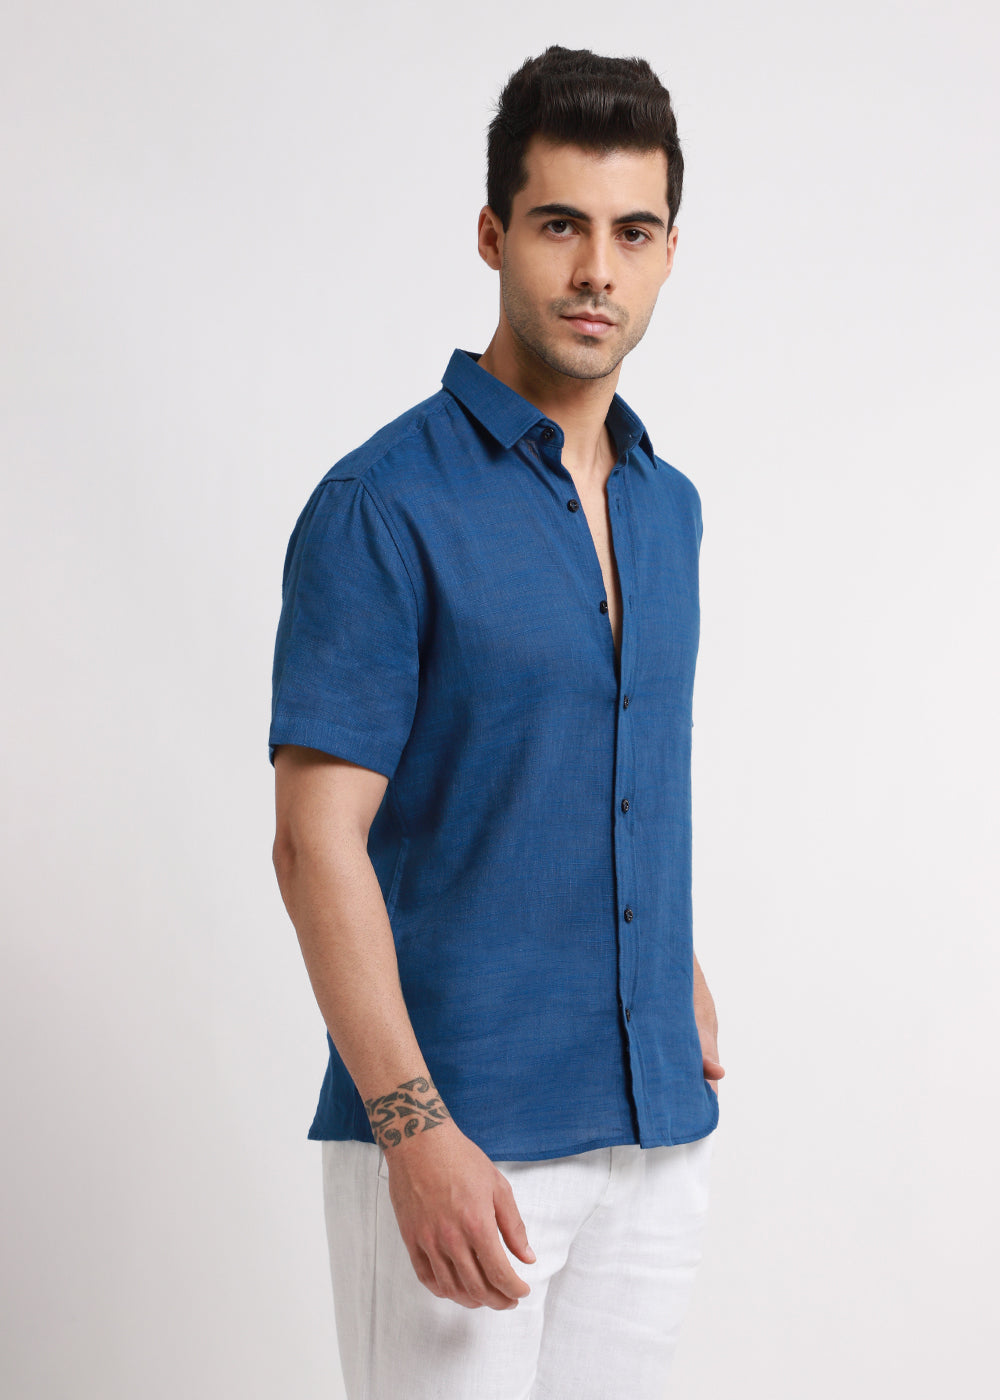 Batiste Blue Topaz Linen shirt